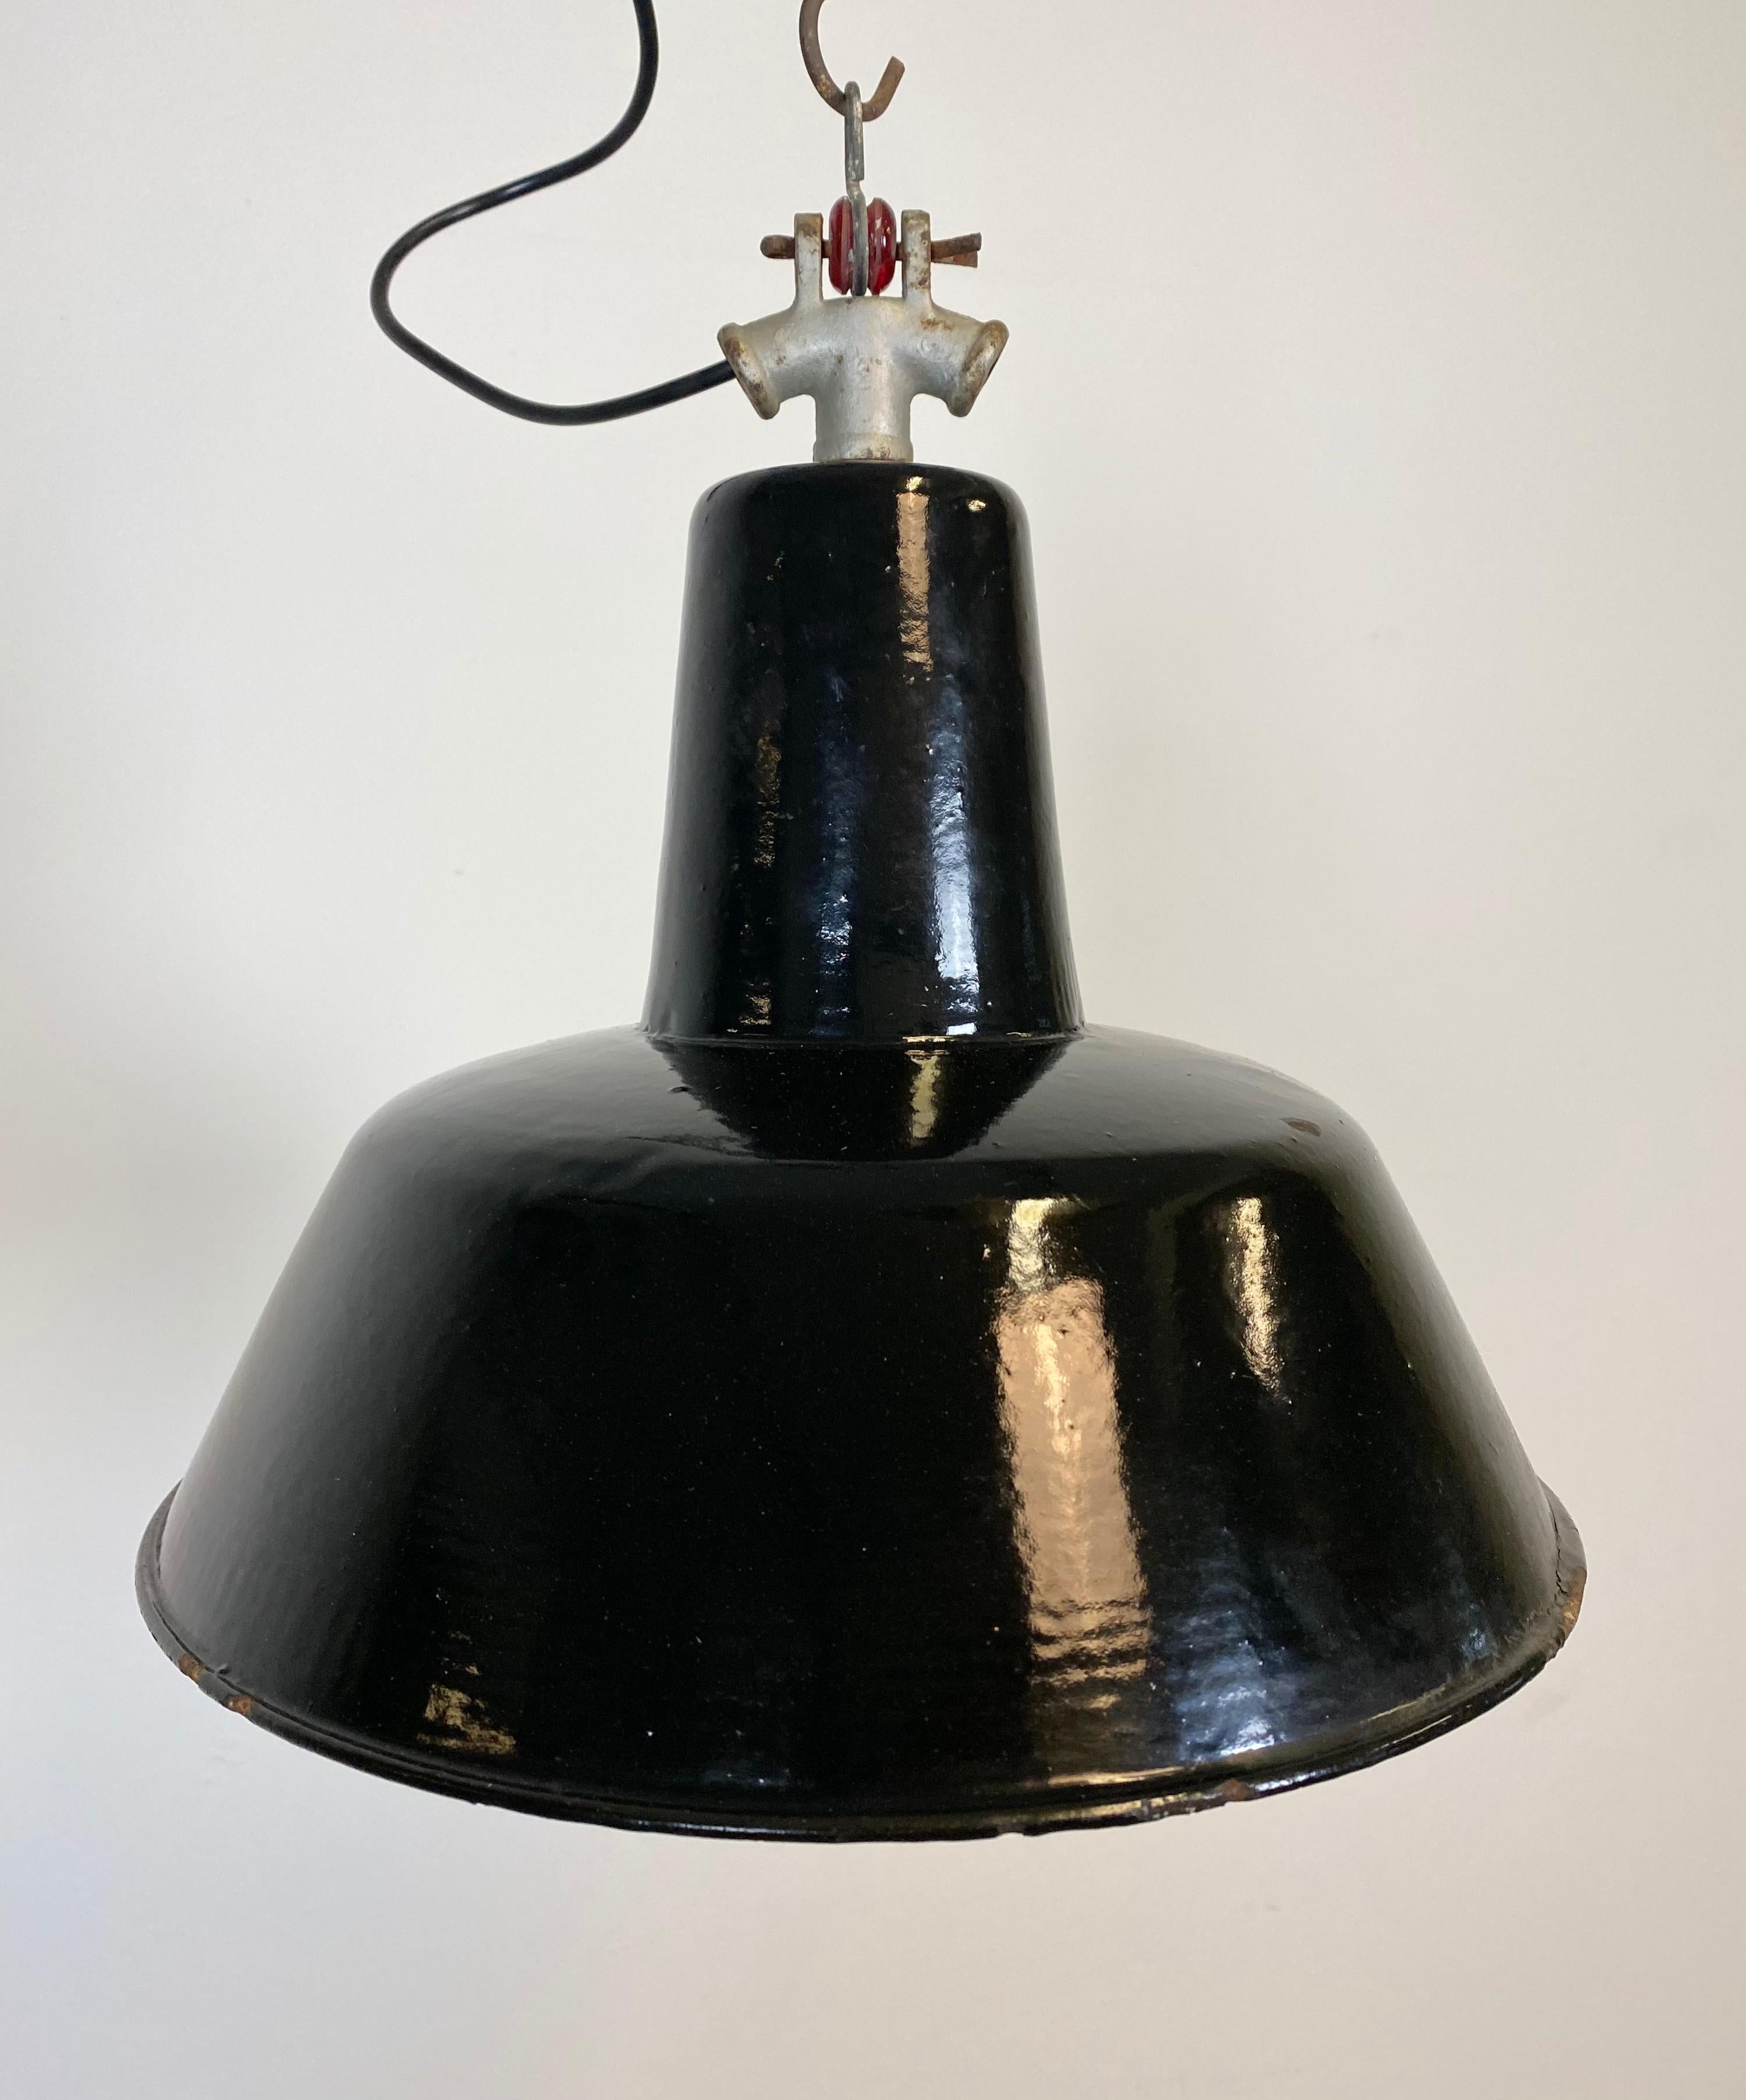 Lampe suspendue provenant de l'ancienne Tchécoslovaquie, utilisée dans les usines dans les années 1930.
Fabriqué en métal émaillé. Extérieur noir, intérieur blanc. Plateau en fonte intéressant.
Nouvelle douille en porcelaine pour ampoules E 27 et